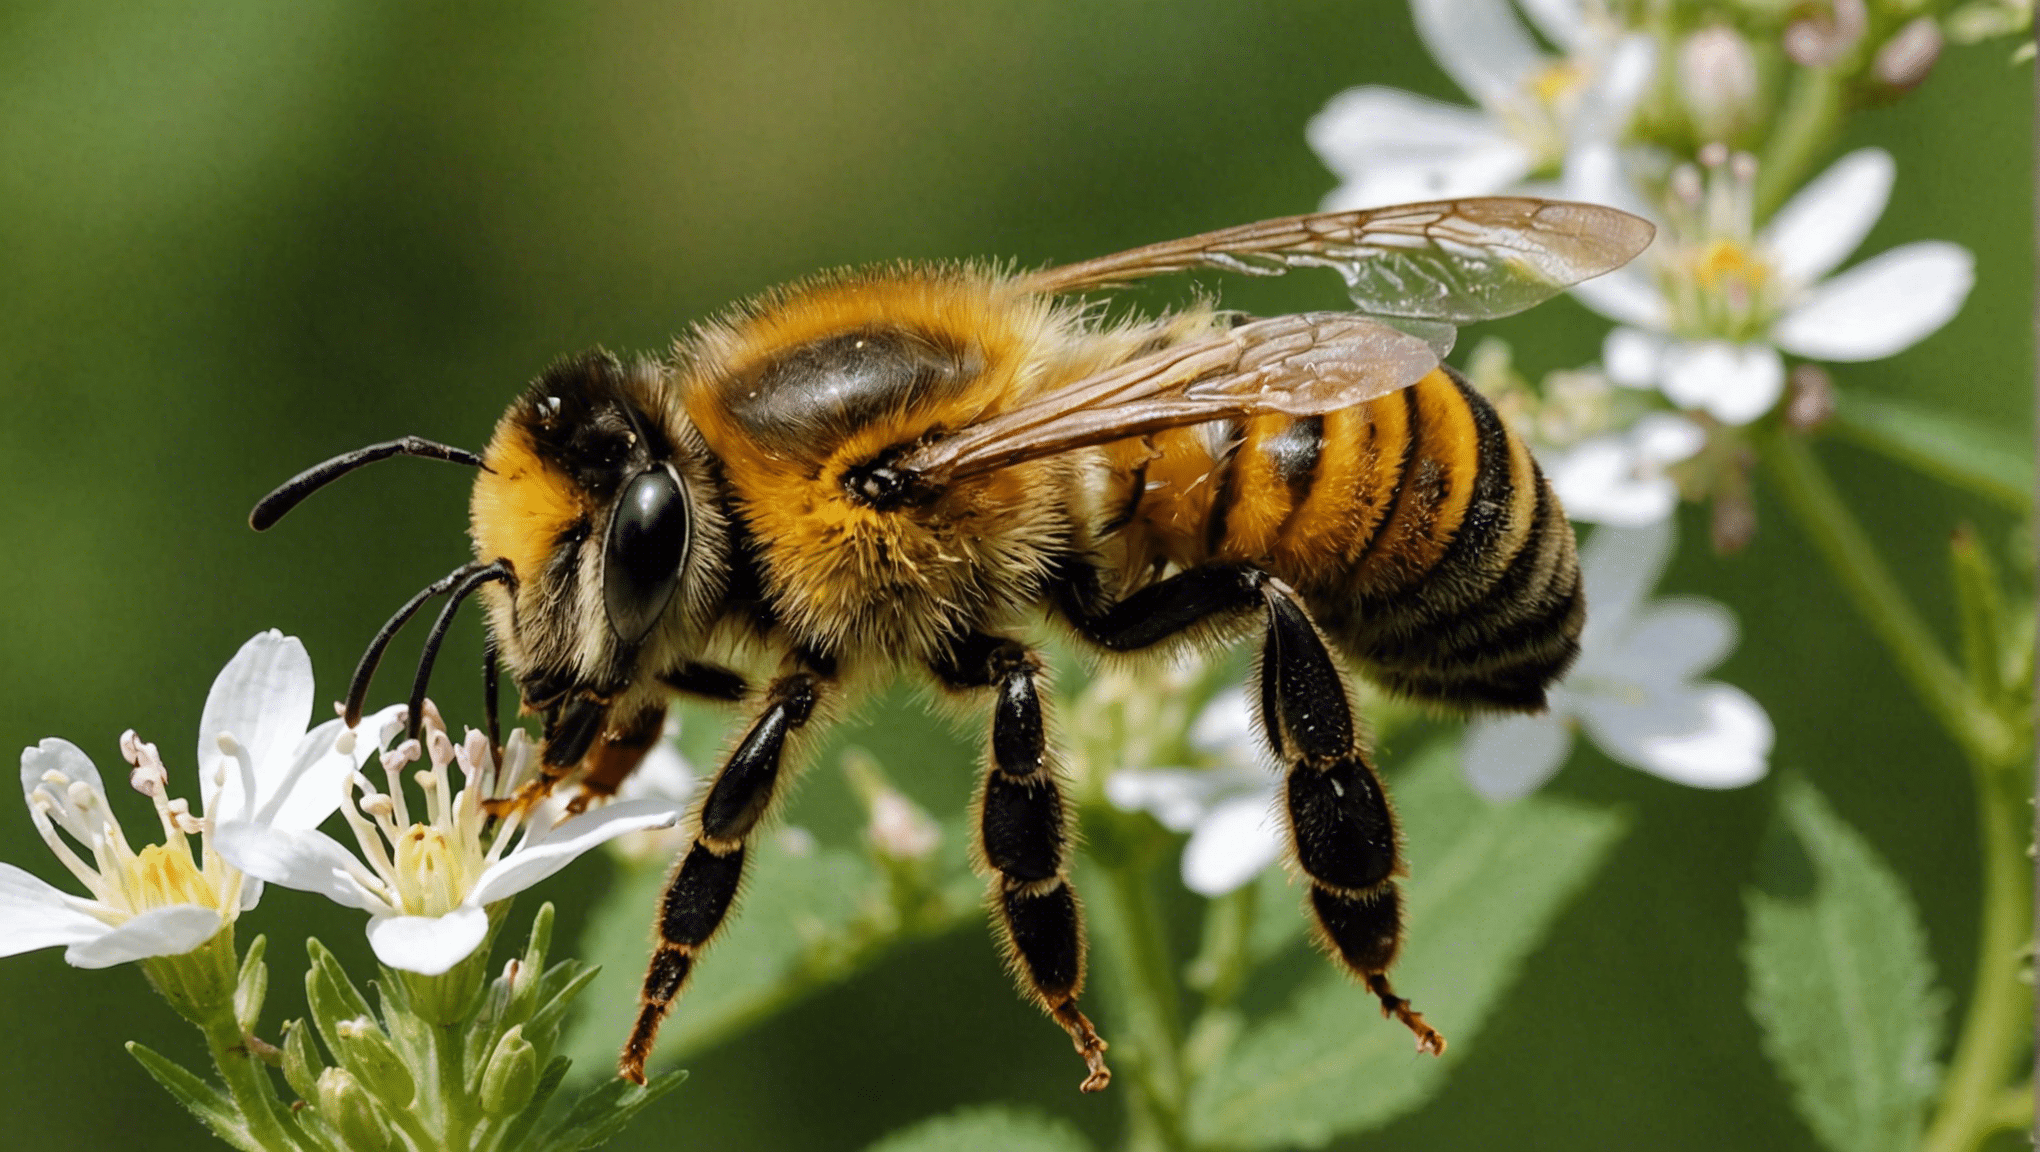 scopri perché l'ape svolge un ruolo essenziale come custode della biodiversità e come contribuisce alla preservazione del nostro ecosistema.